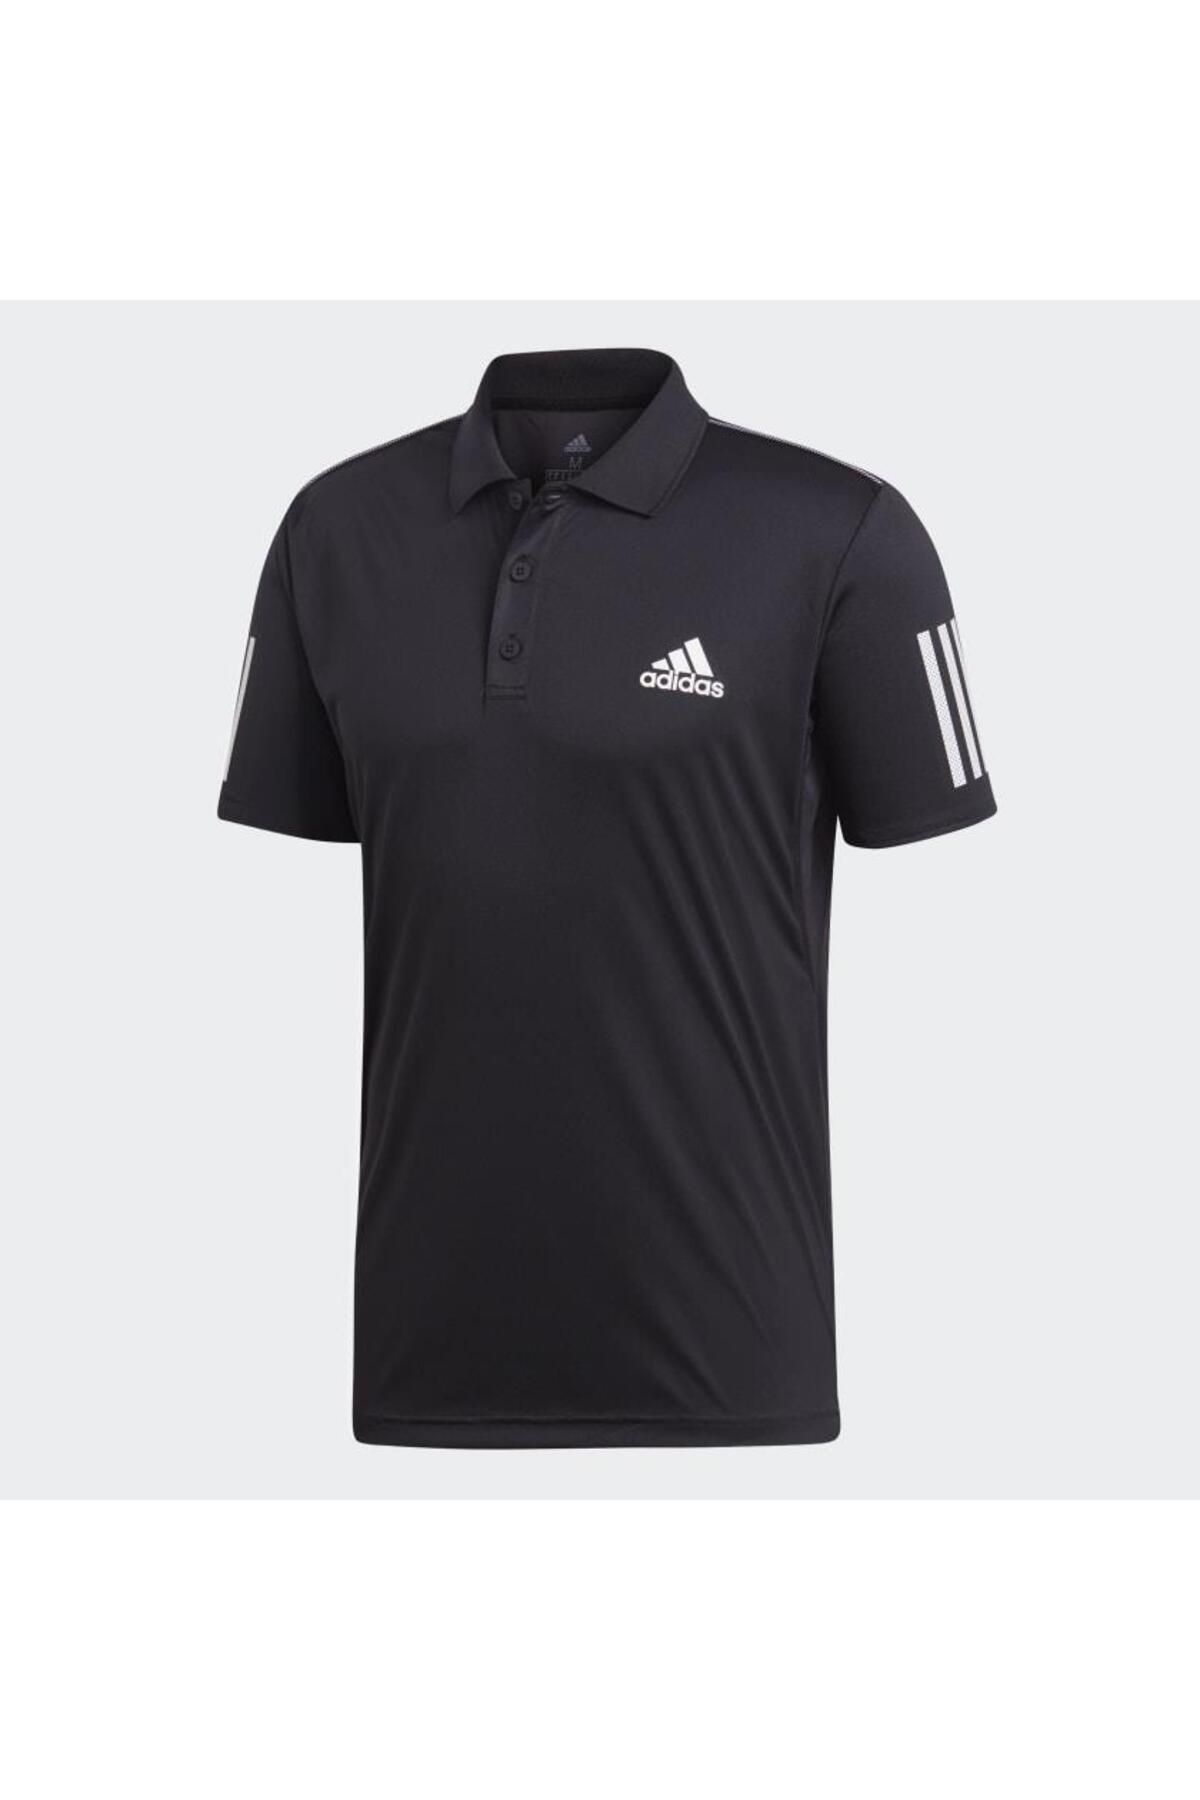 adidas Erkek Tenis Polo Yaka T-shirt Du0848